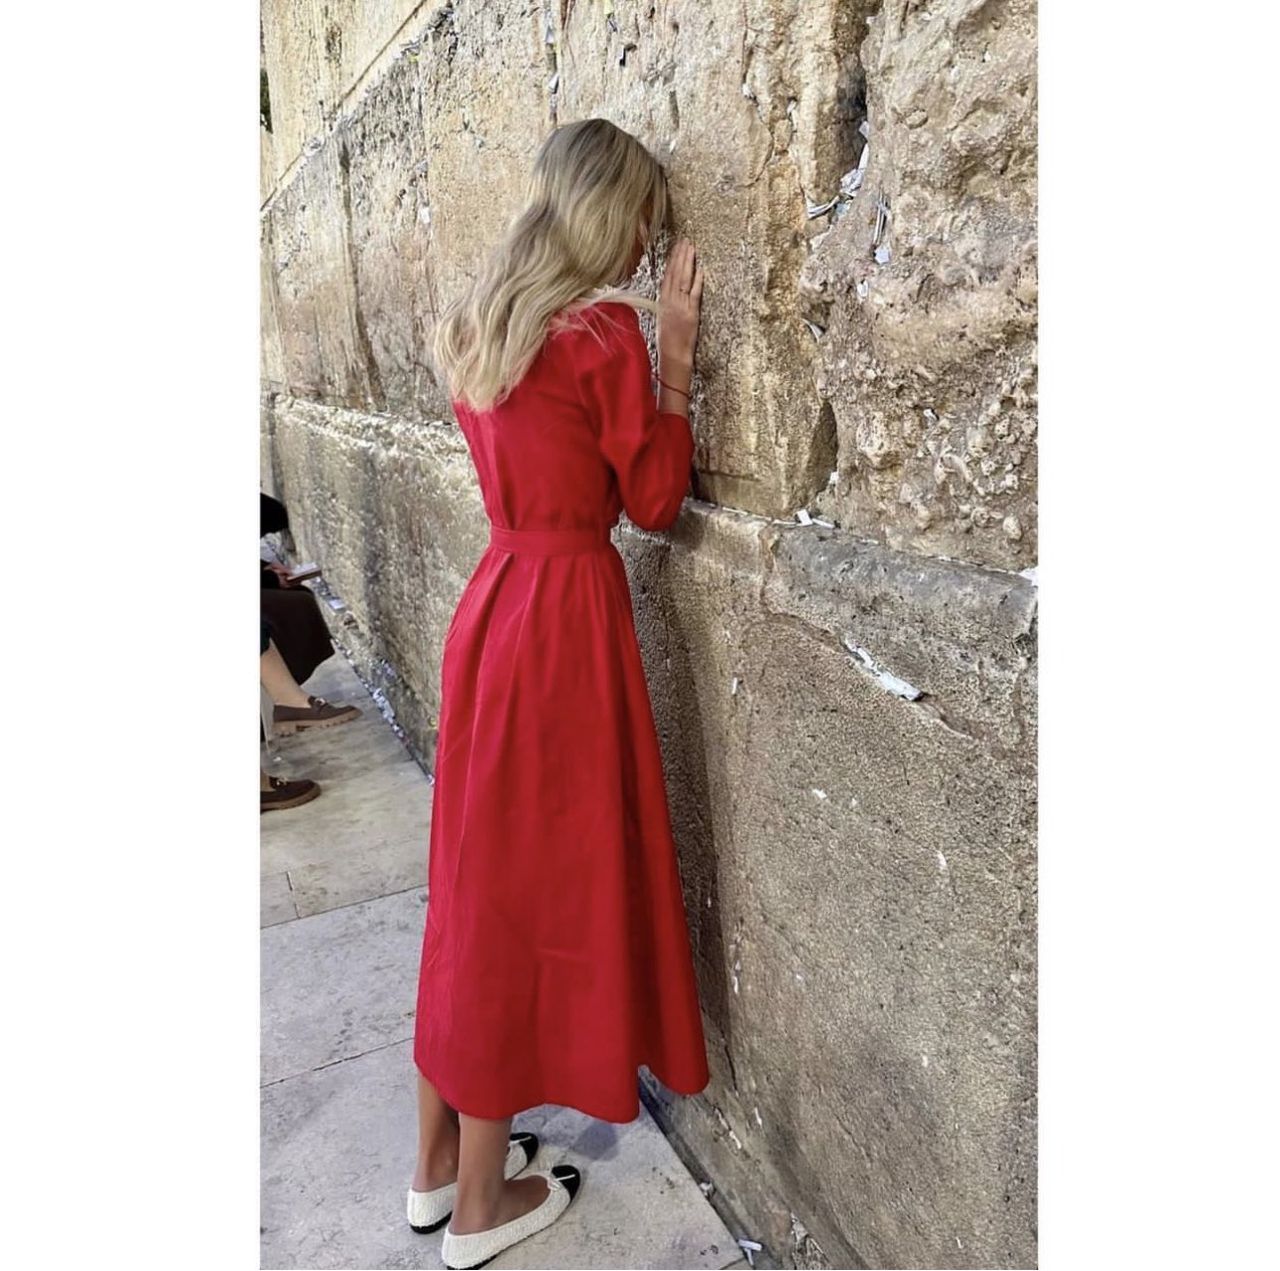 La hija del expresidente celebró Shabbat Shalom